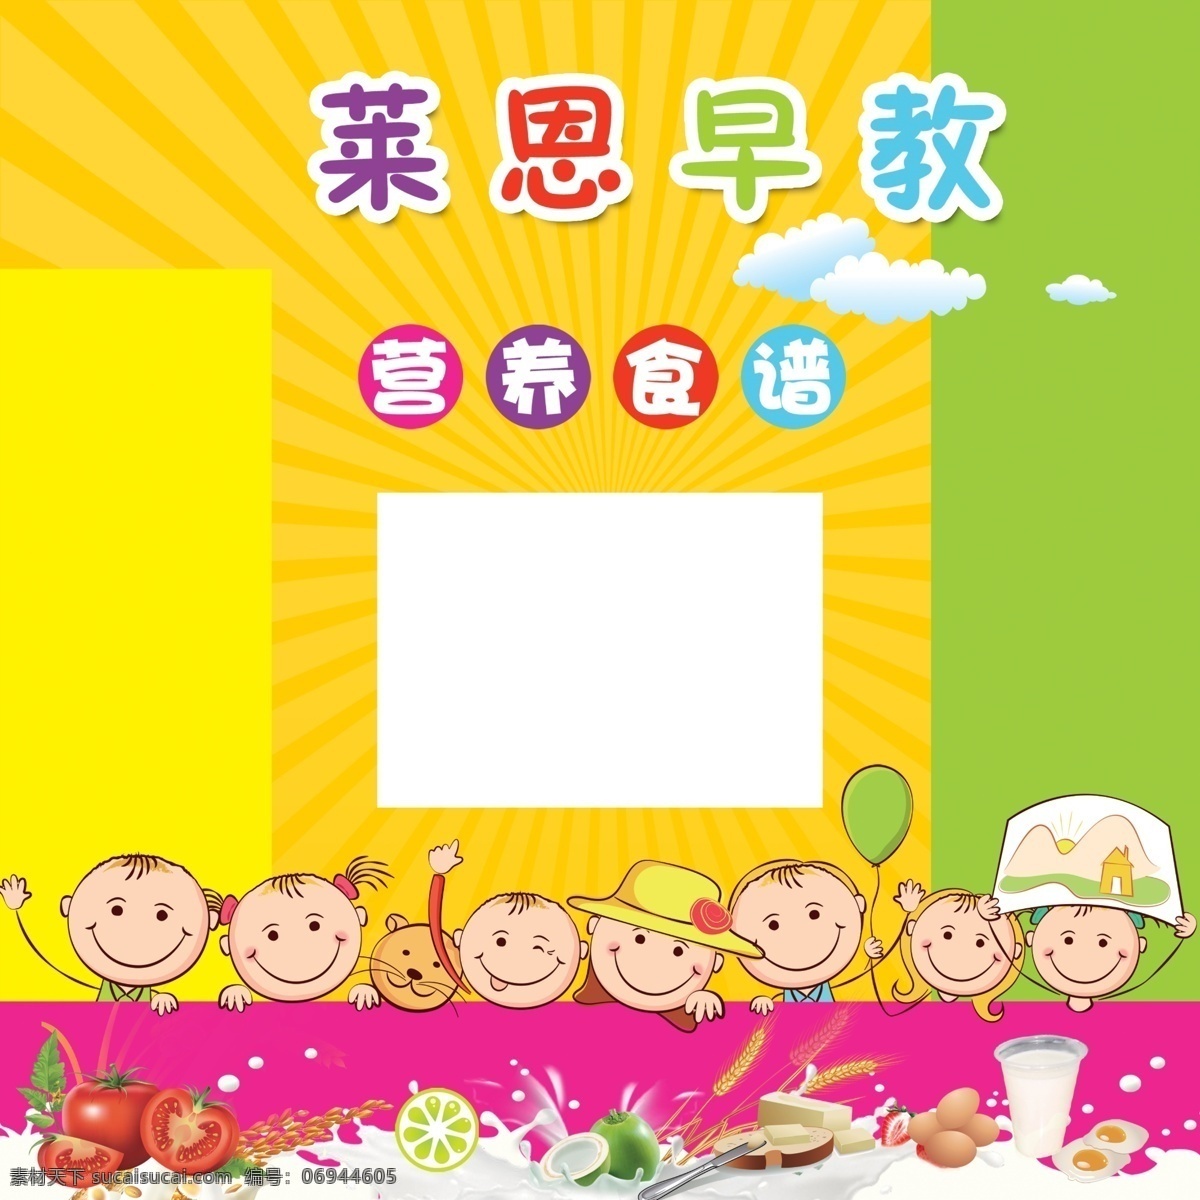 早教中心广告 小孩 气球 西红柿 鸡蛋 牛奶 橙子 苹果 中文字 蓝黄色背景 国内广告设计